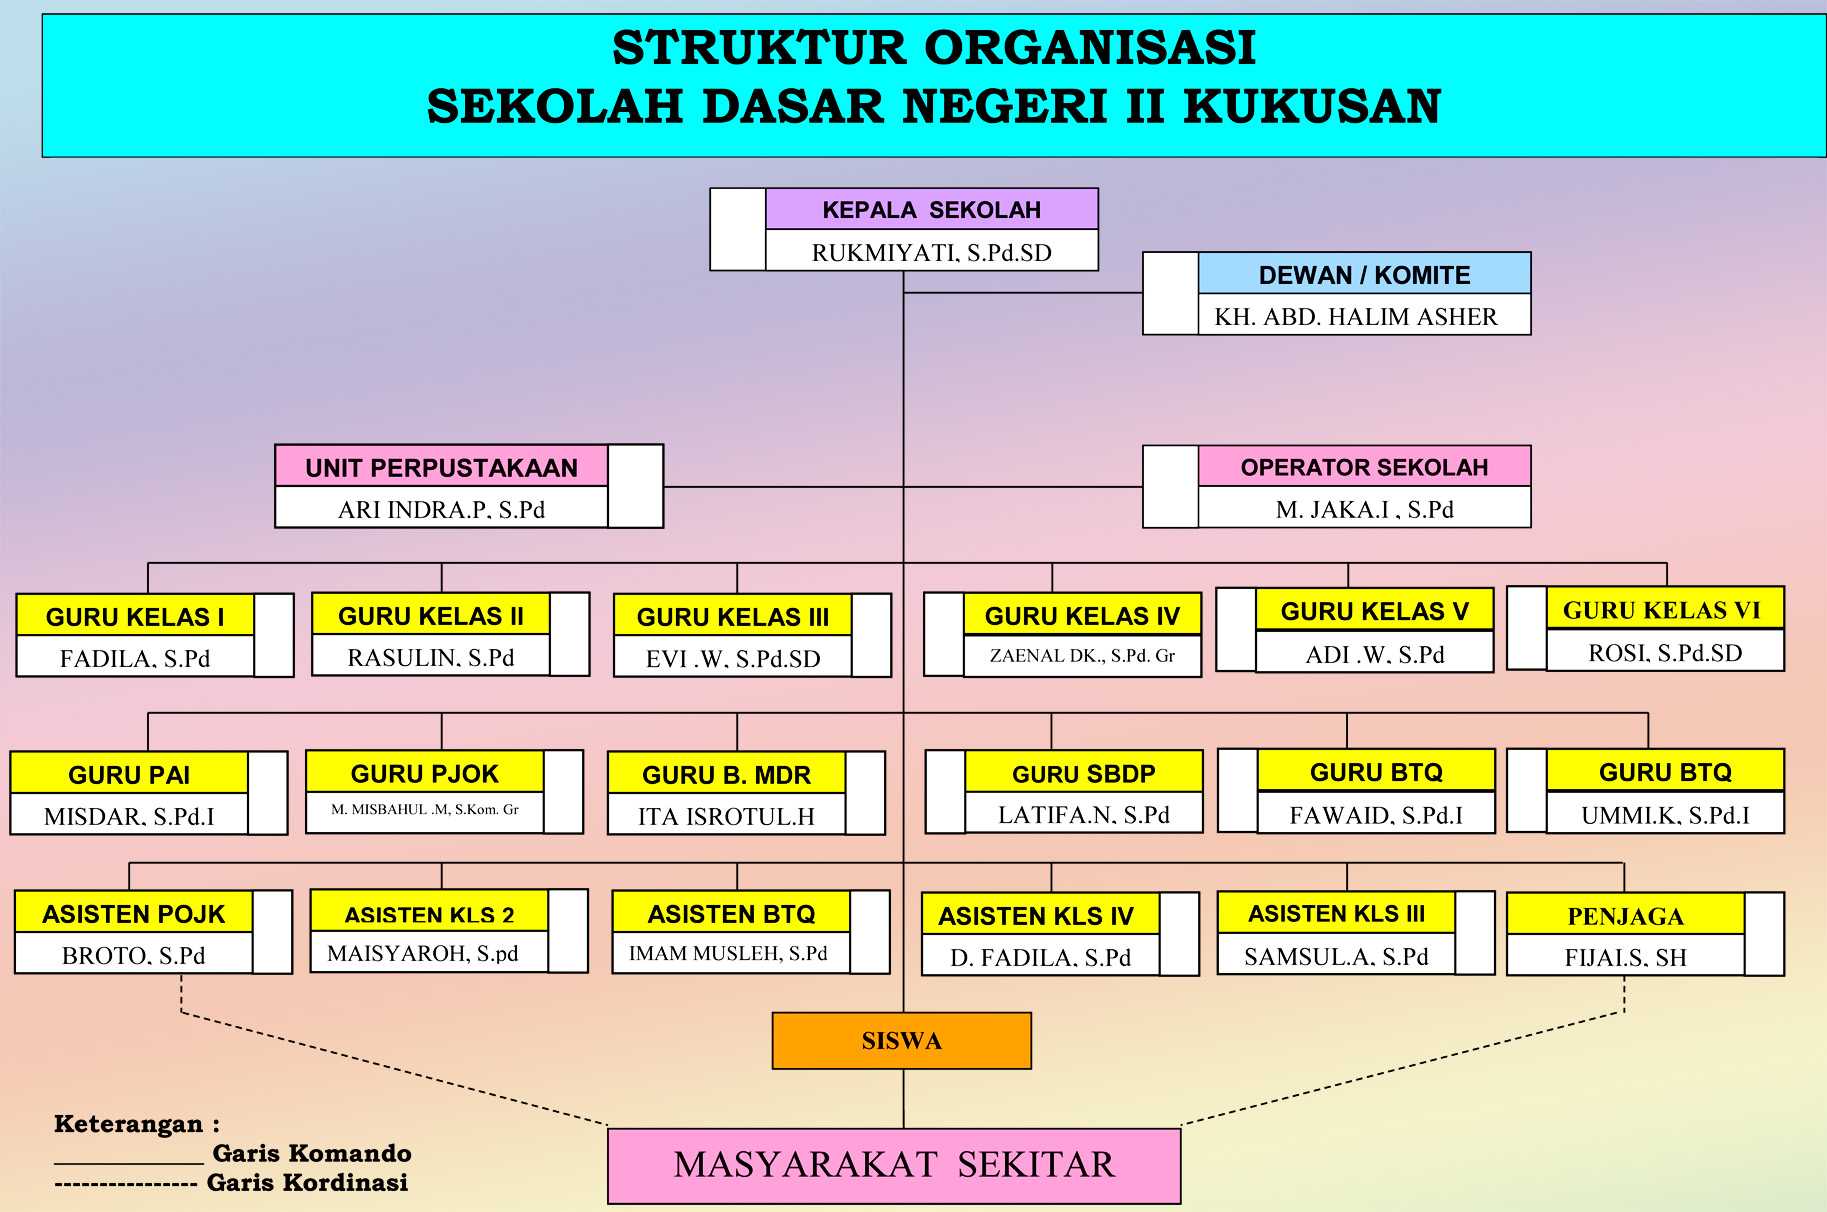 Struktur Organisasi - SD NEGERI II KUKUSAN